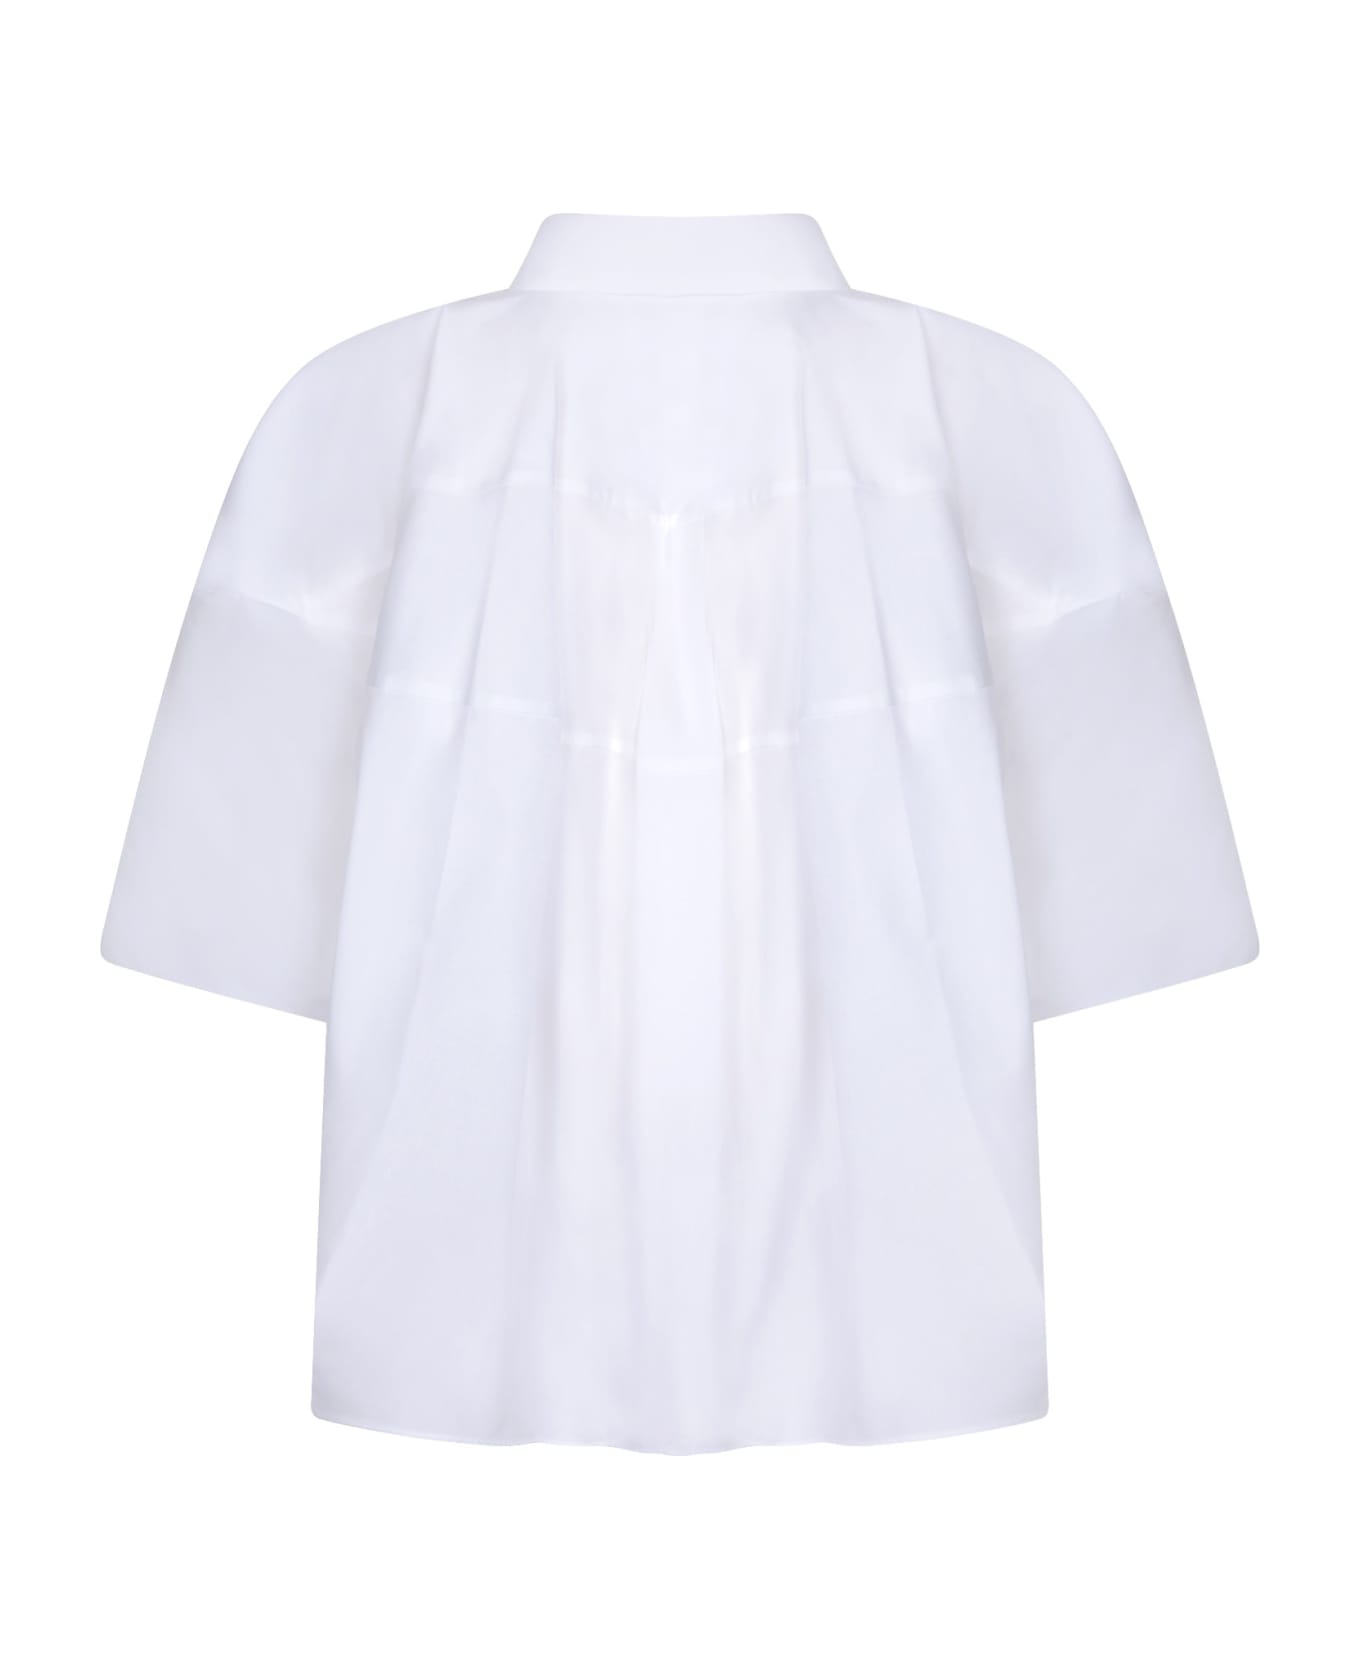 Sacai White Cotton Poplin Shirt - White